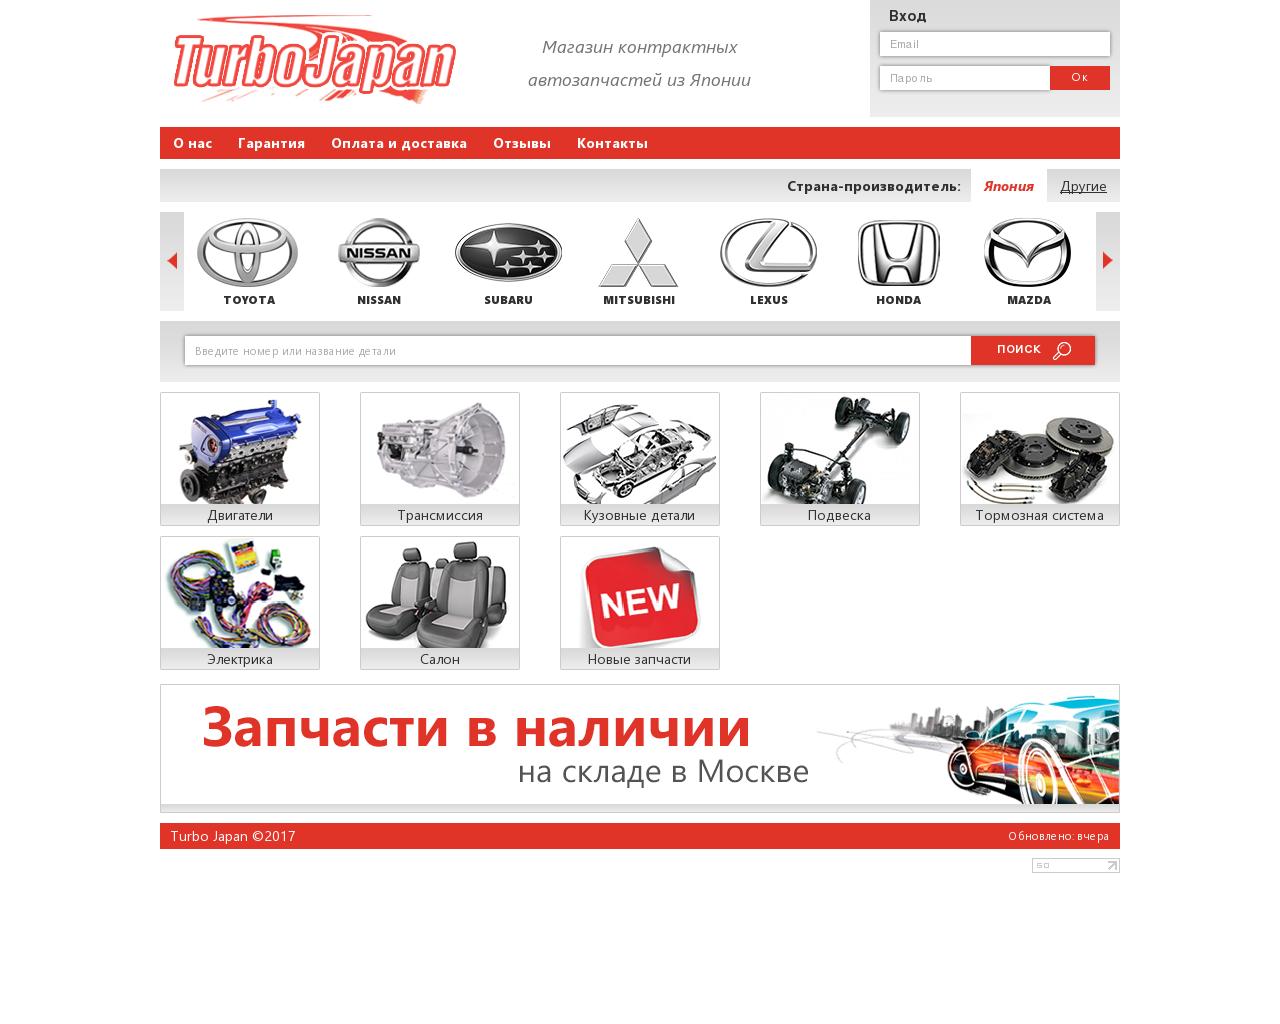 Изображение сайта turbojapan.ru в разрешении 1280x1024